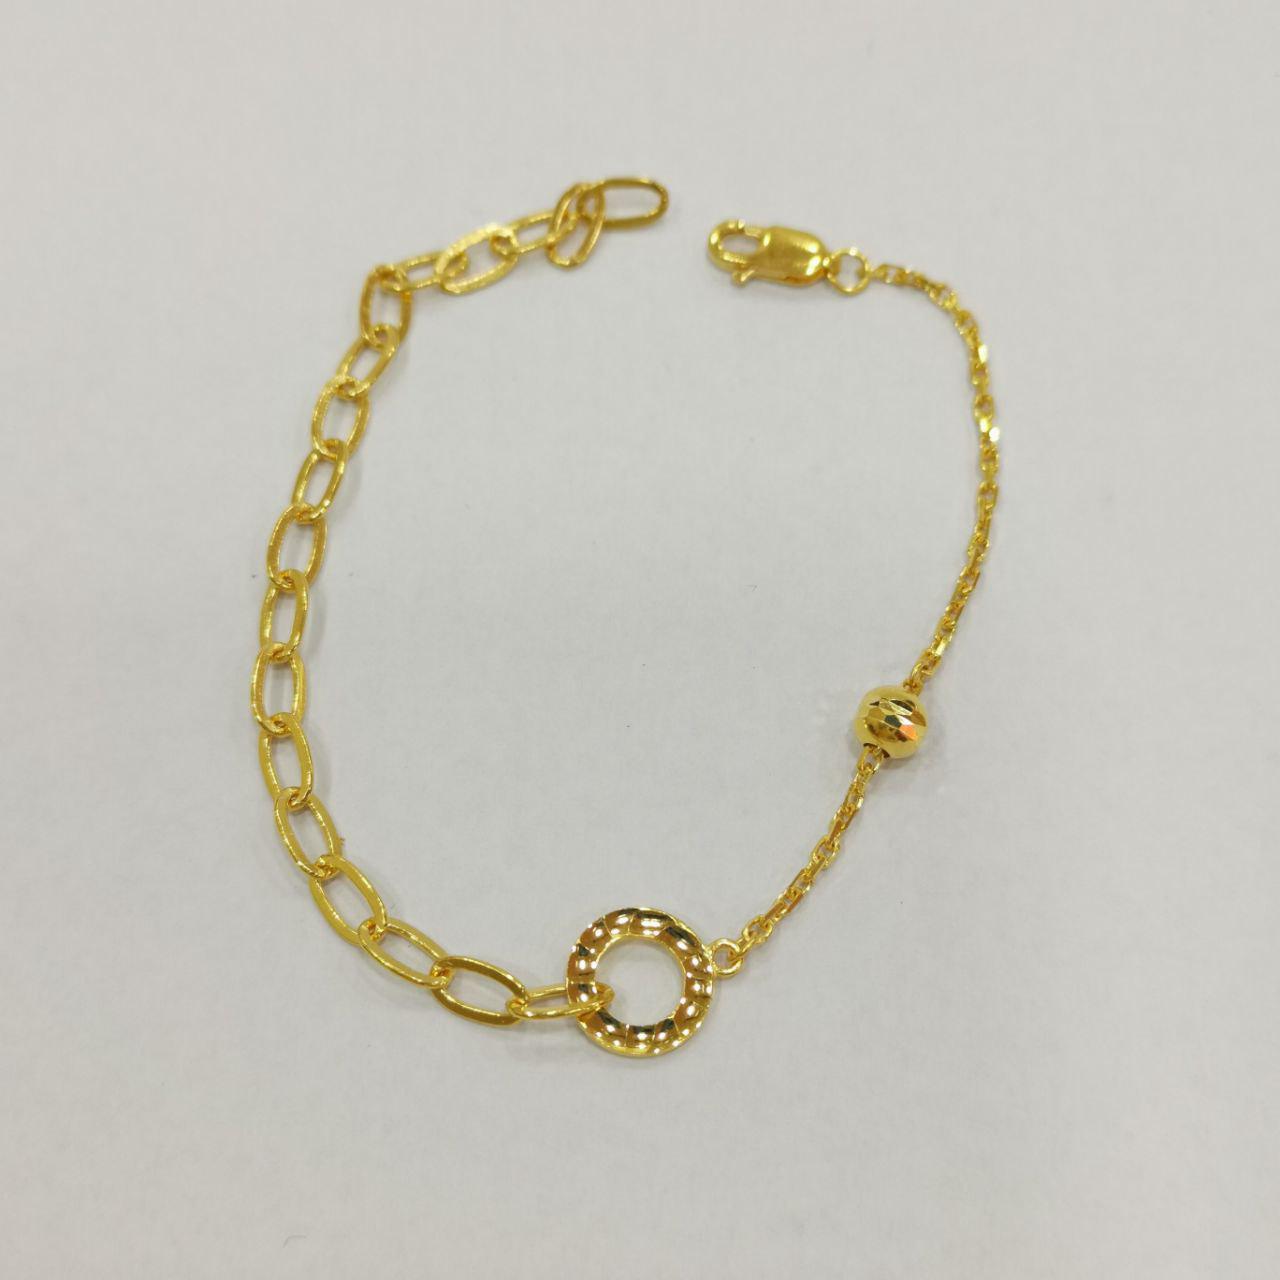 22k / 916 Gold Designer Bracelet v3-916 gold-Best Gold Shop